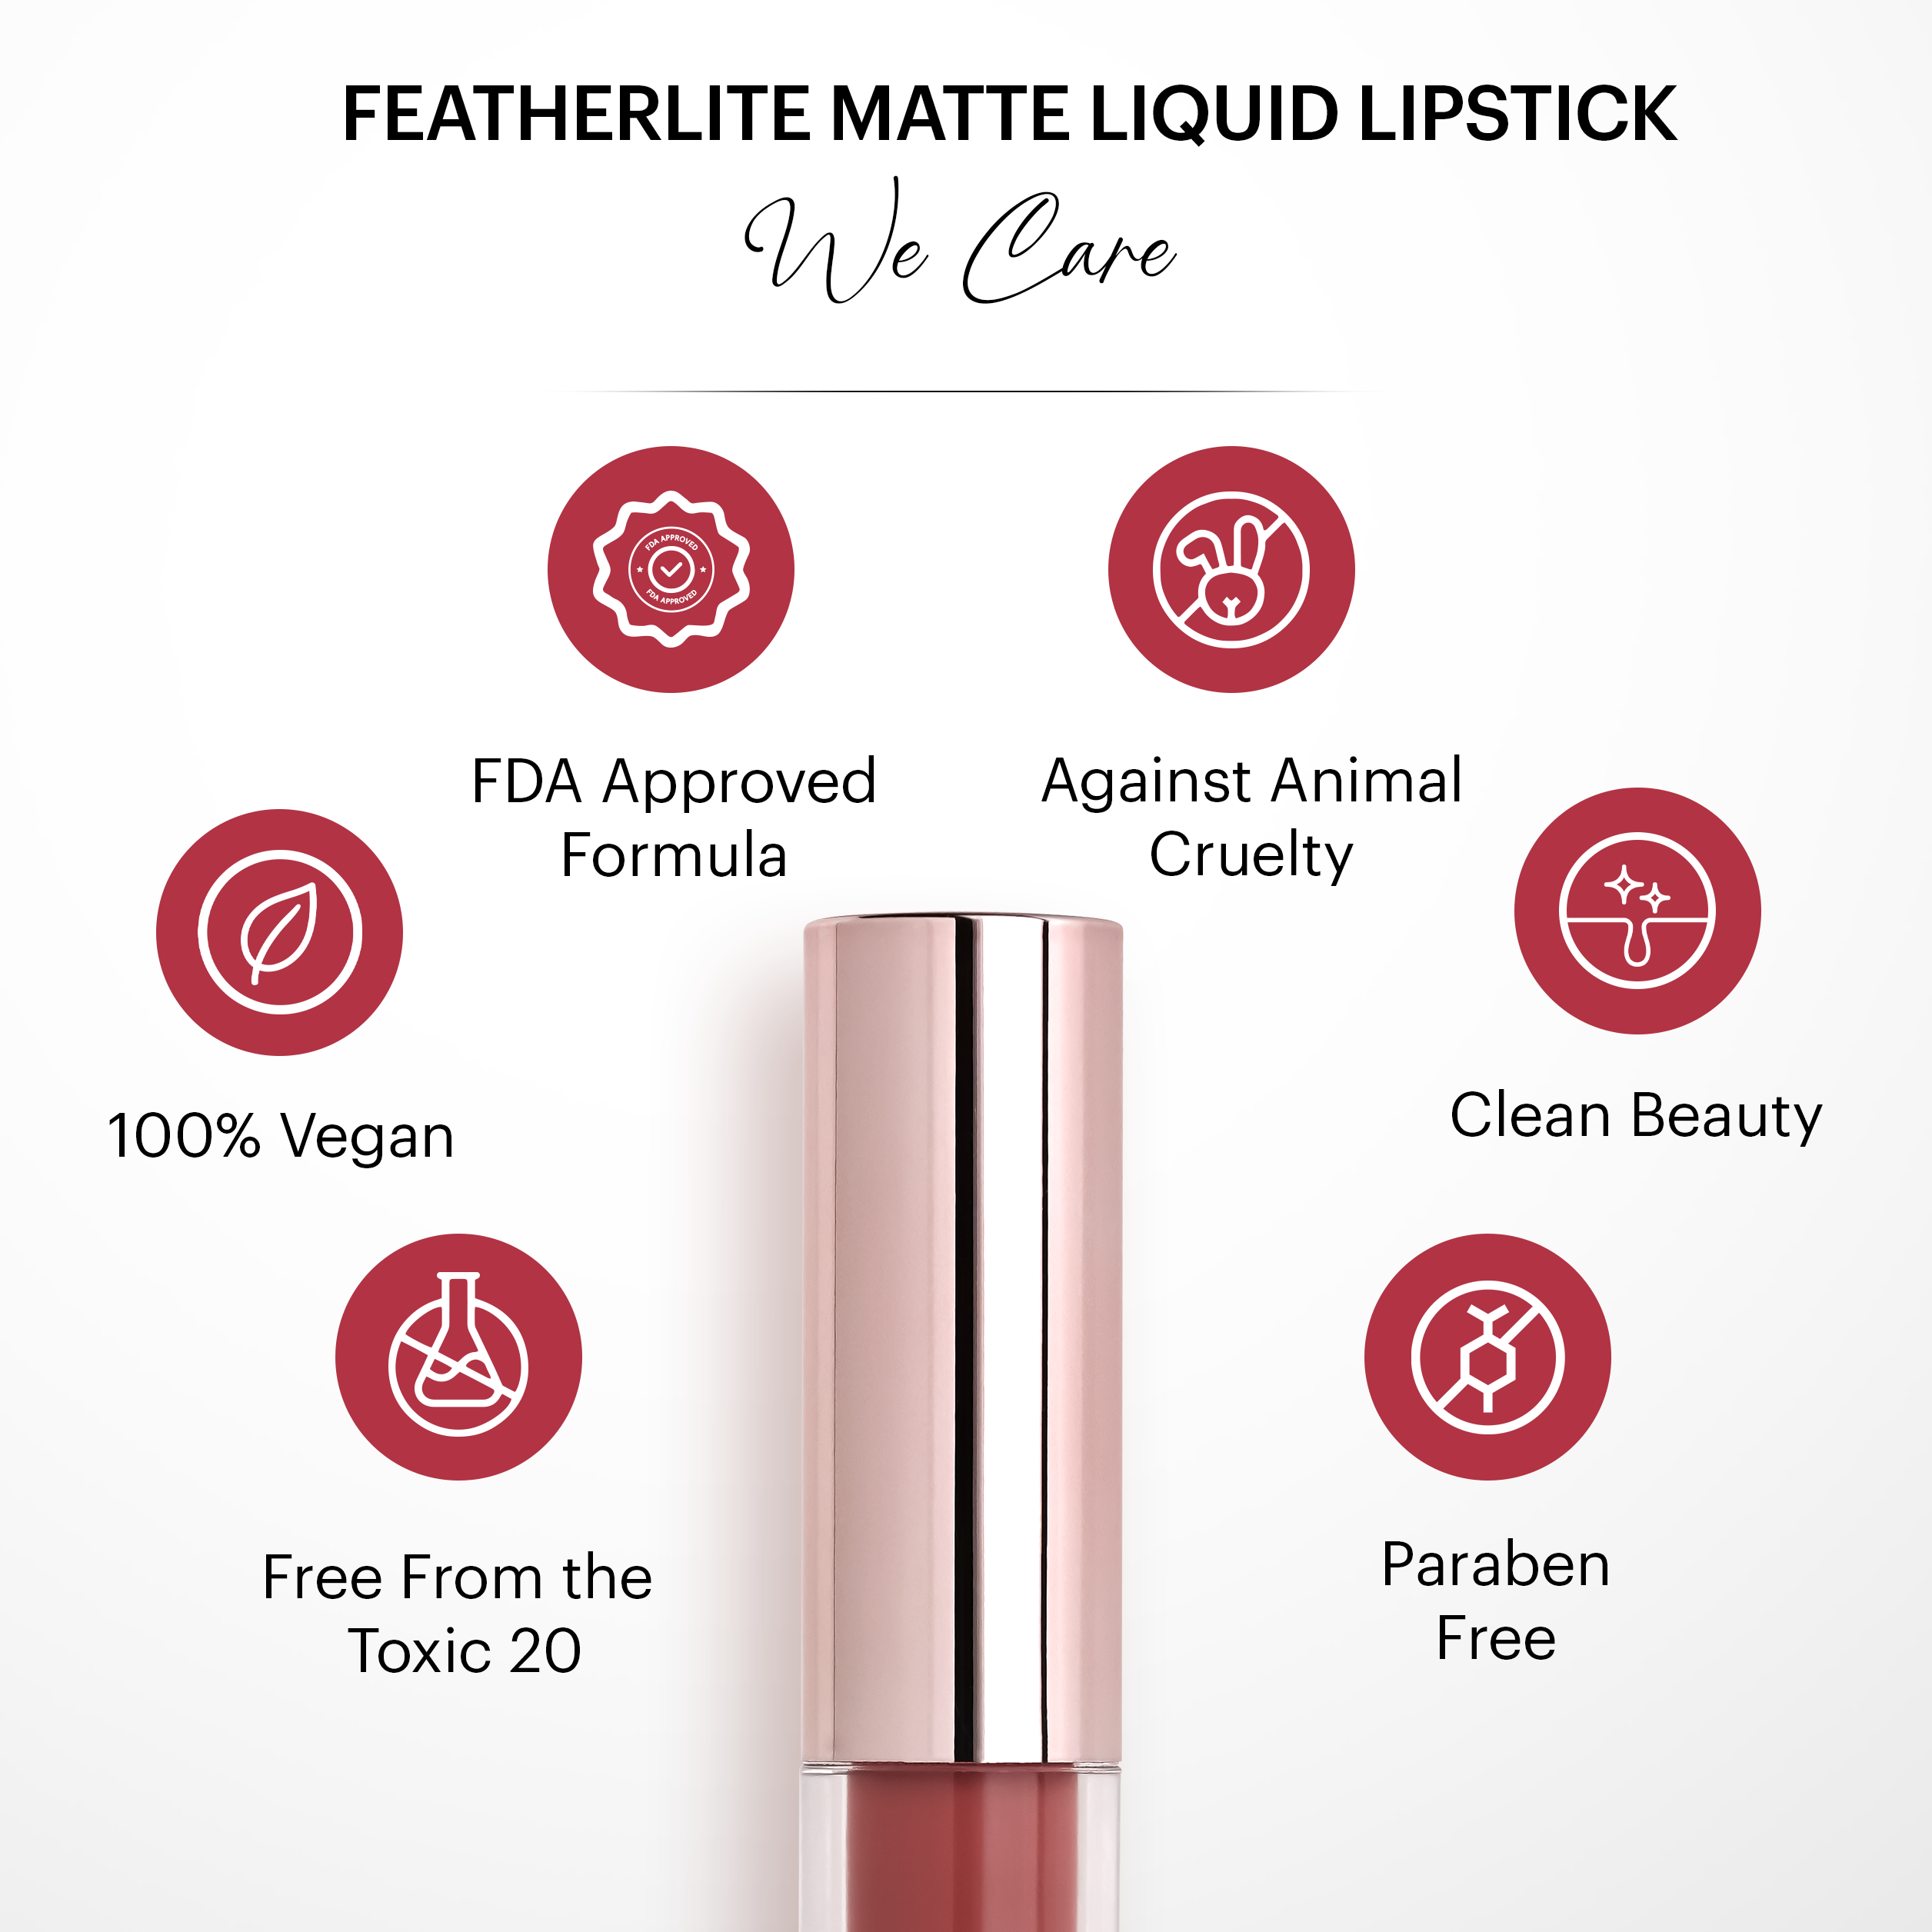 Featherlite Matte Liquid Lipstick: Smitten 55